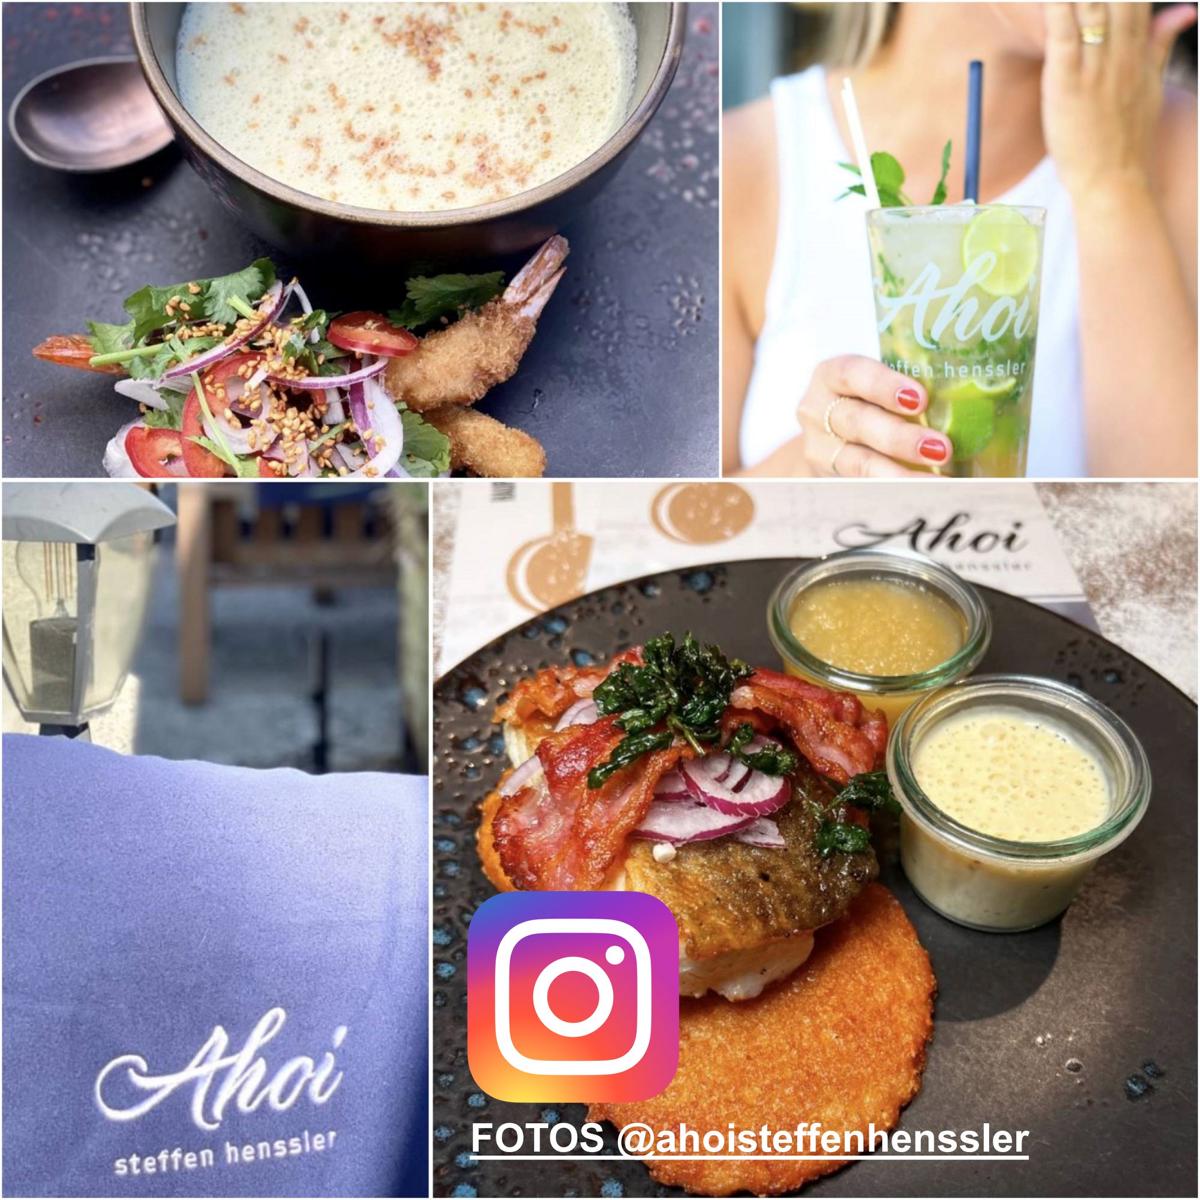 ahoi steffen henssler food 5 Foto instagram@ahoisteffenhenssler 1 - Terrassenüberdachung an der Waterkant - AHOI Restaurant Grömitz